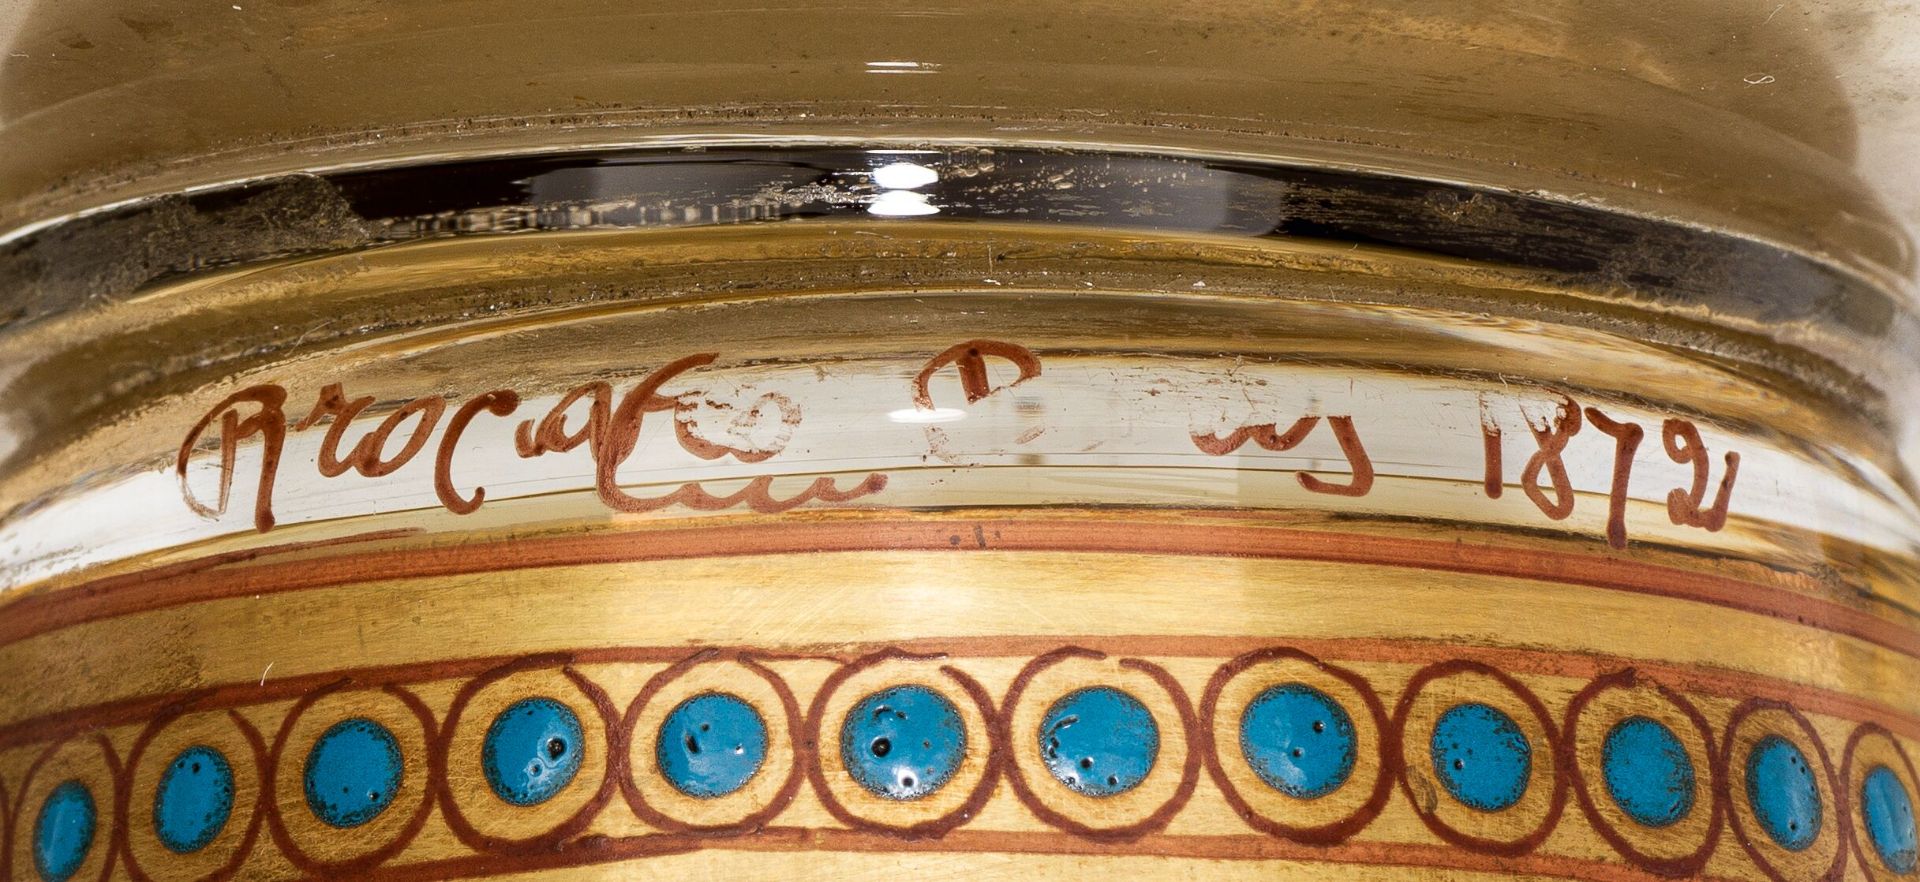 Philippe-Joseph BrocardVaseParis, 1872colourless glass, bunte enamel colour, rich gold décor; signed - Image 2 of 2